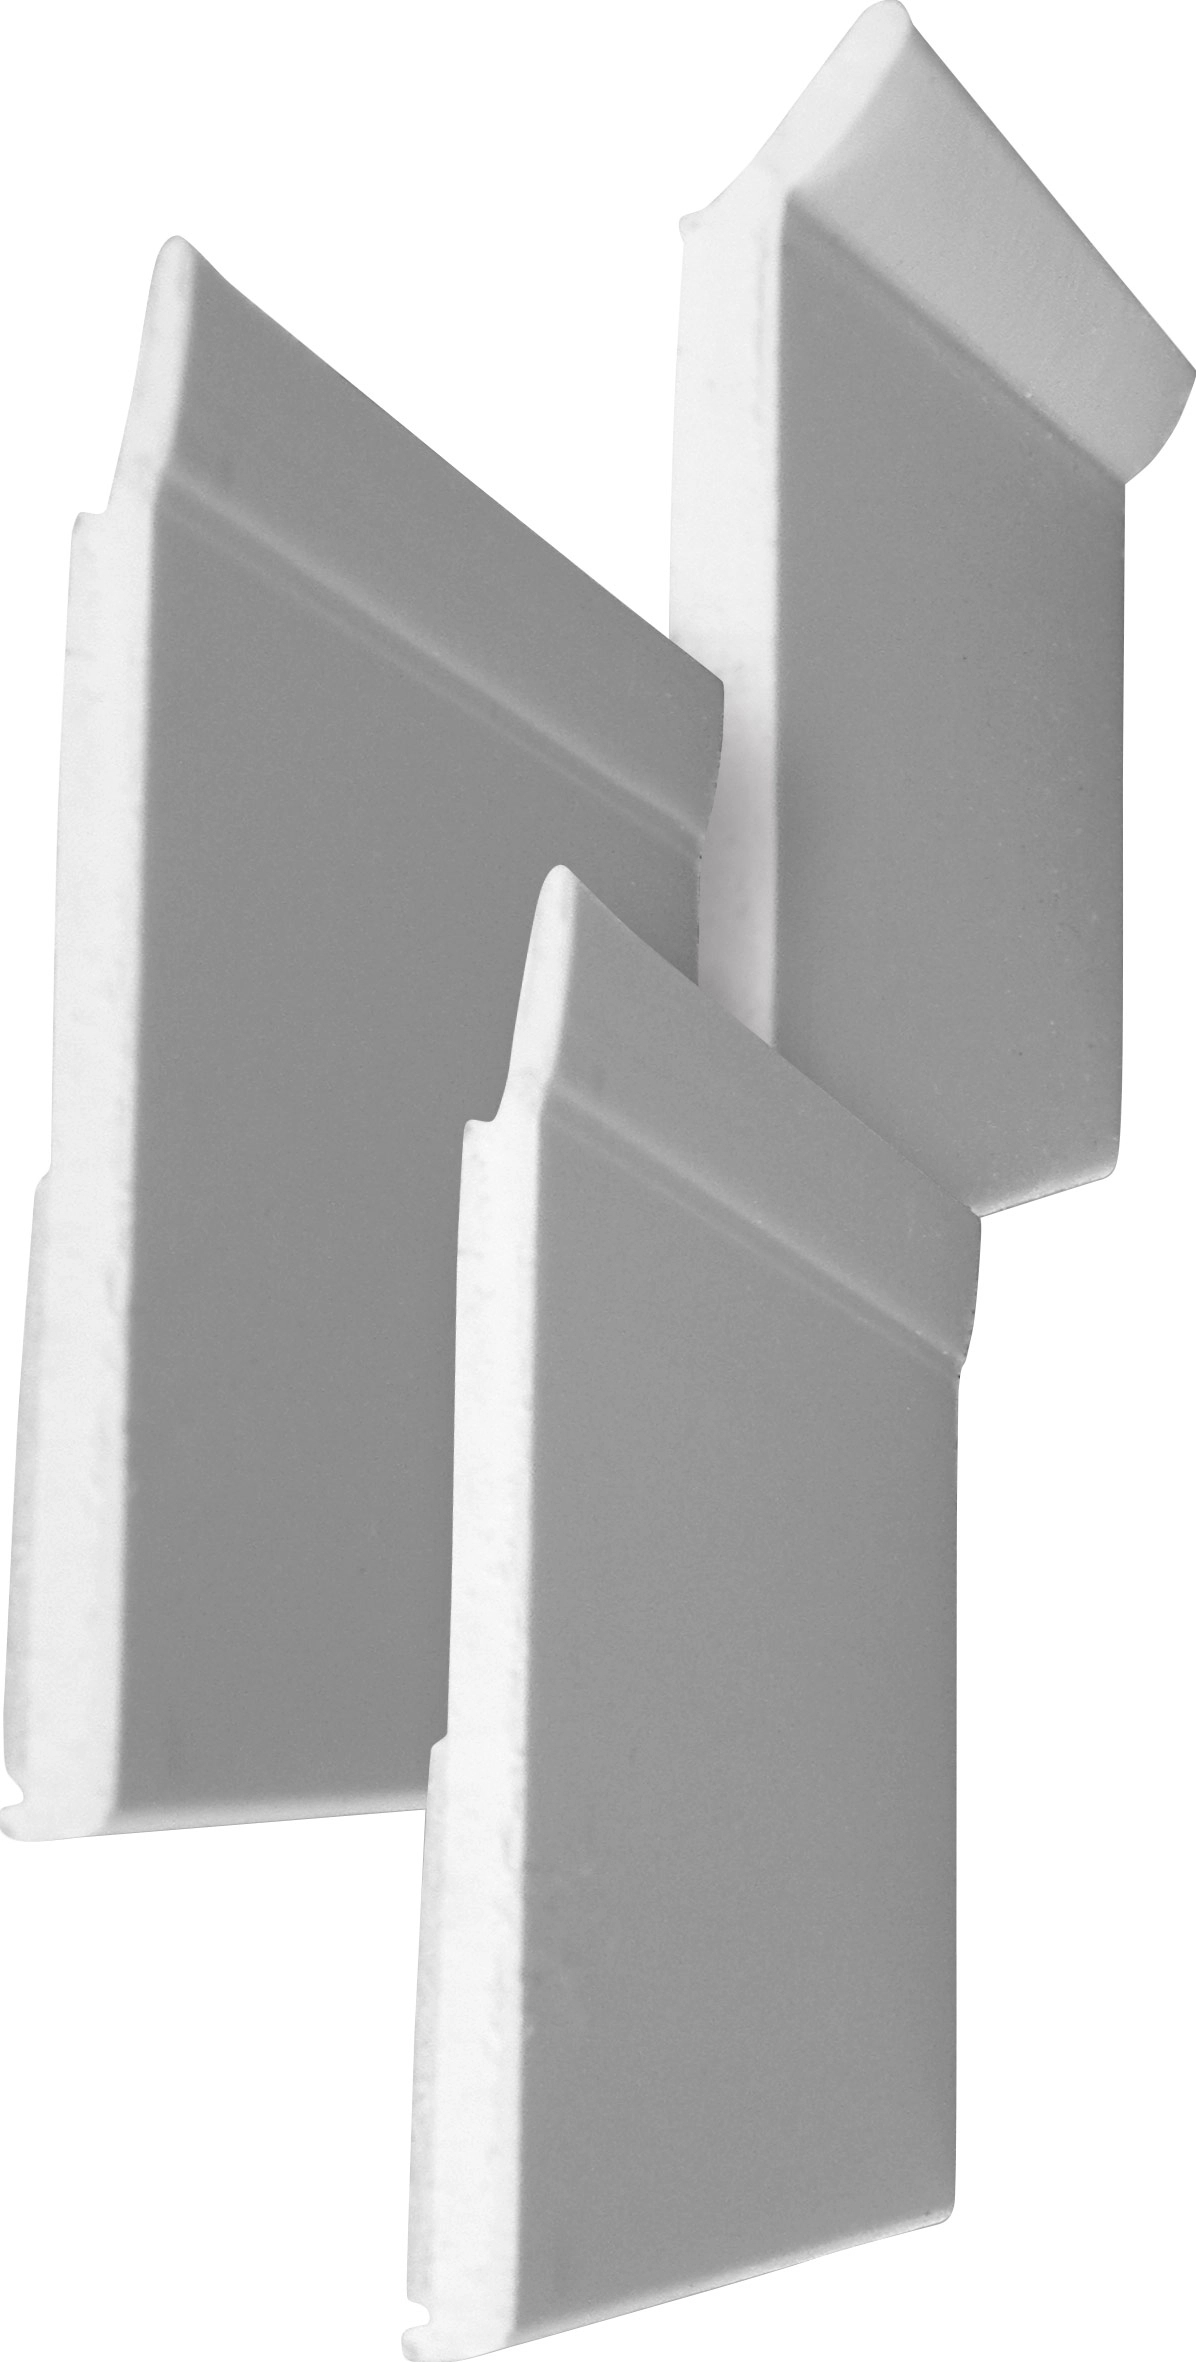 Primo Flachleiste 90 cm 30 x 2,5 mm weiß selbstklebend Leisten